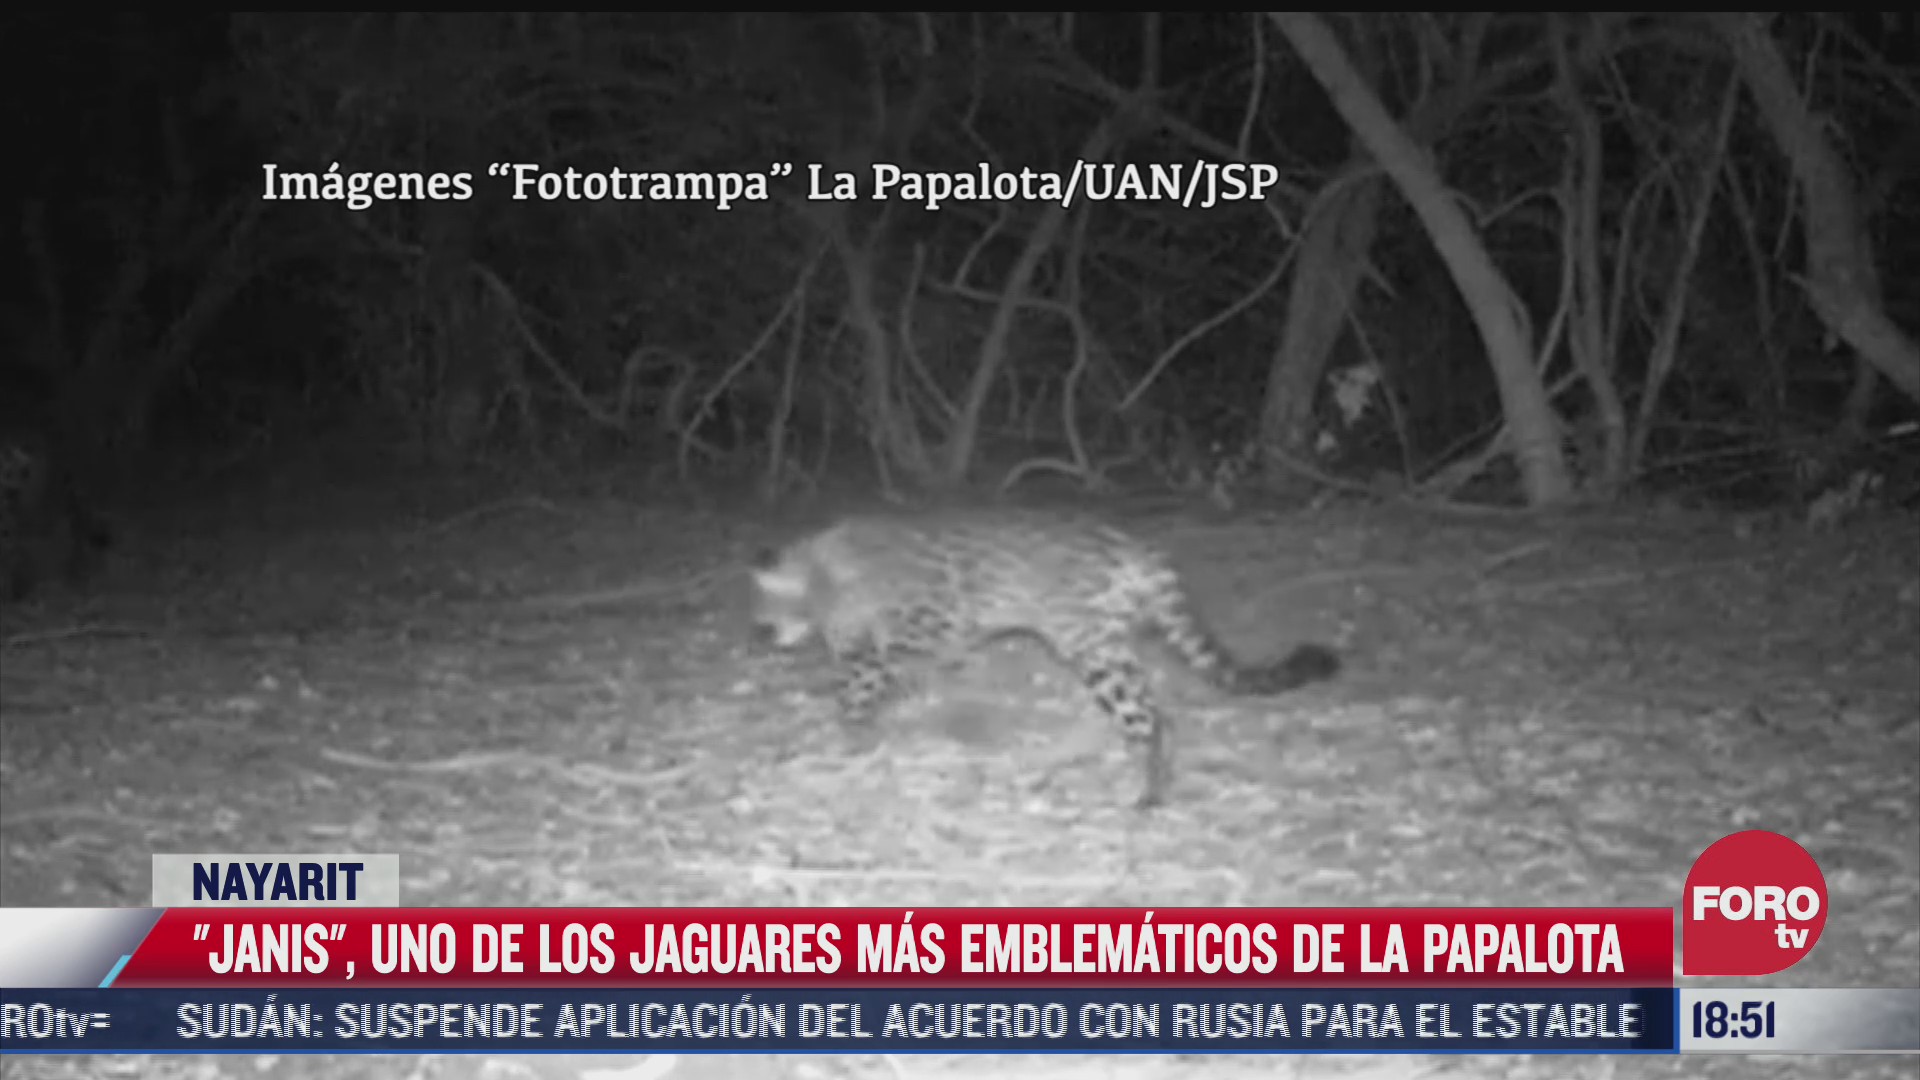 janis uno de los jaguares mas emblematicos en la papalota nayarit